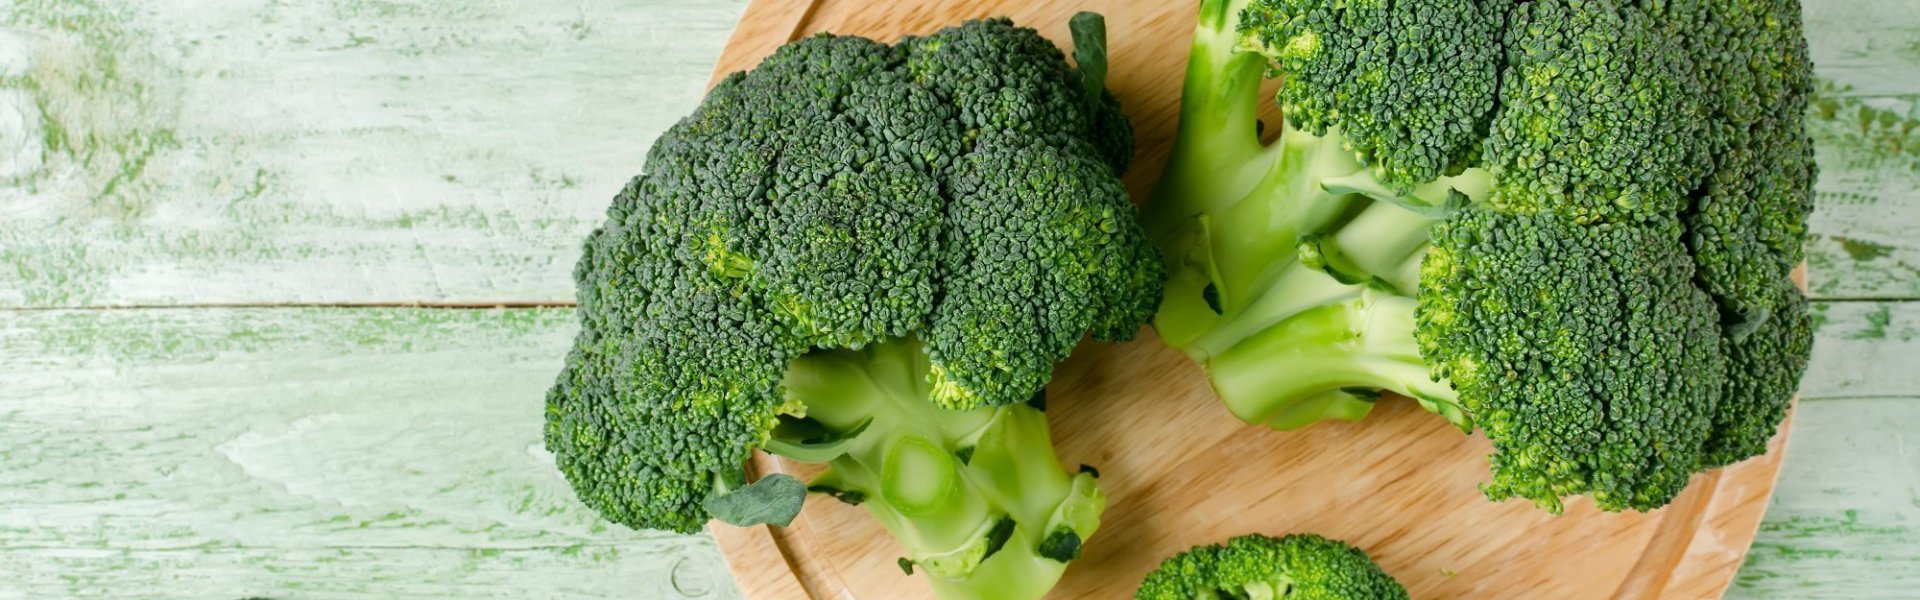 Twee groene broccoli's liggen op houten snijplank, klaar om roosjes uit te snijden en klaar te maken.